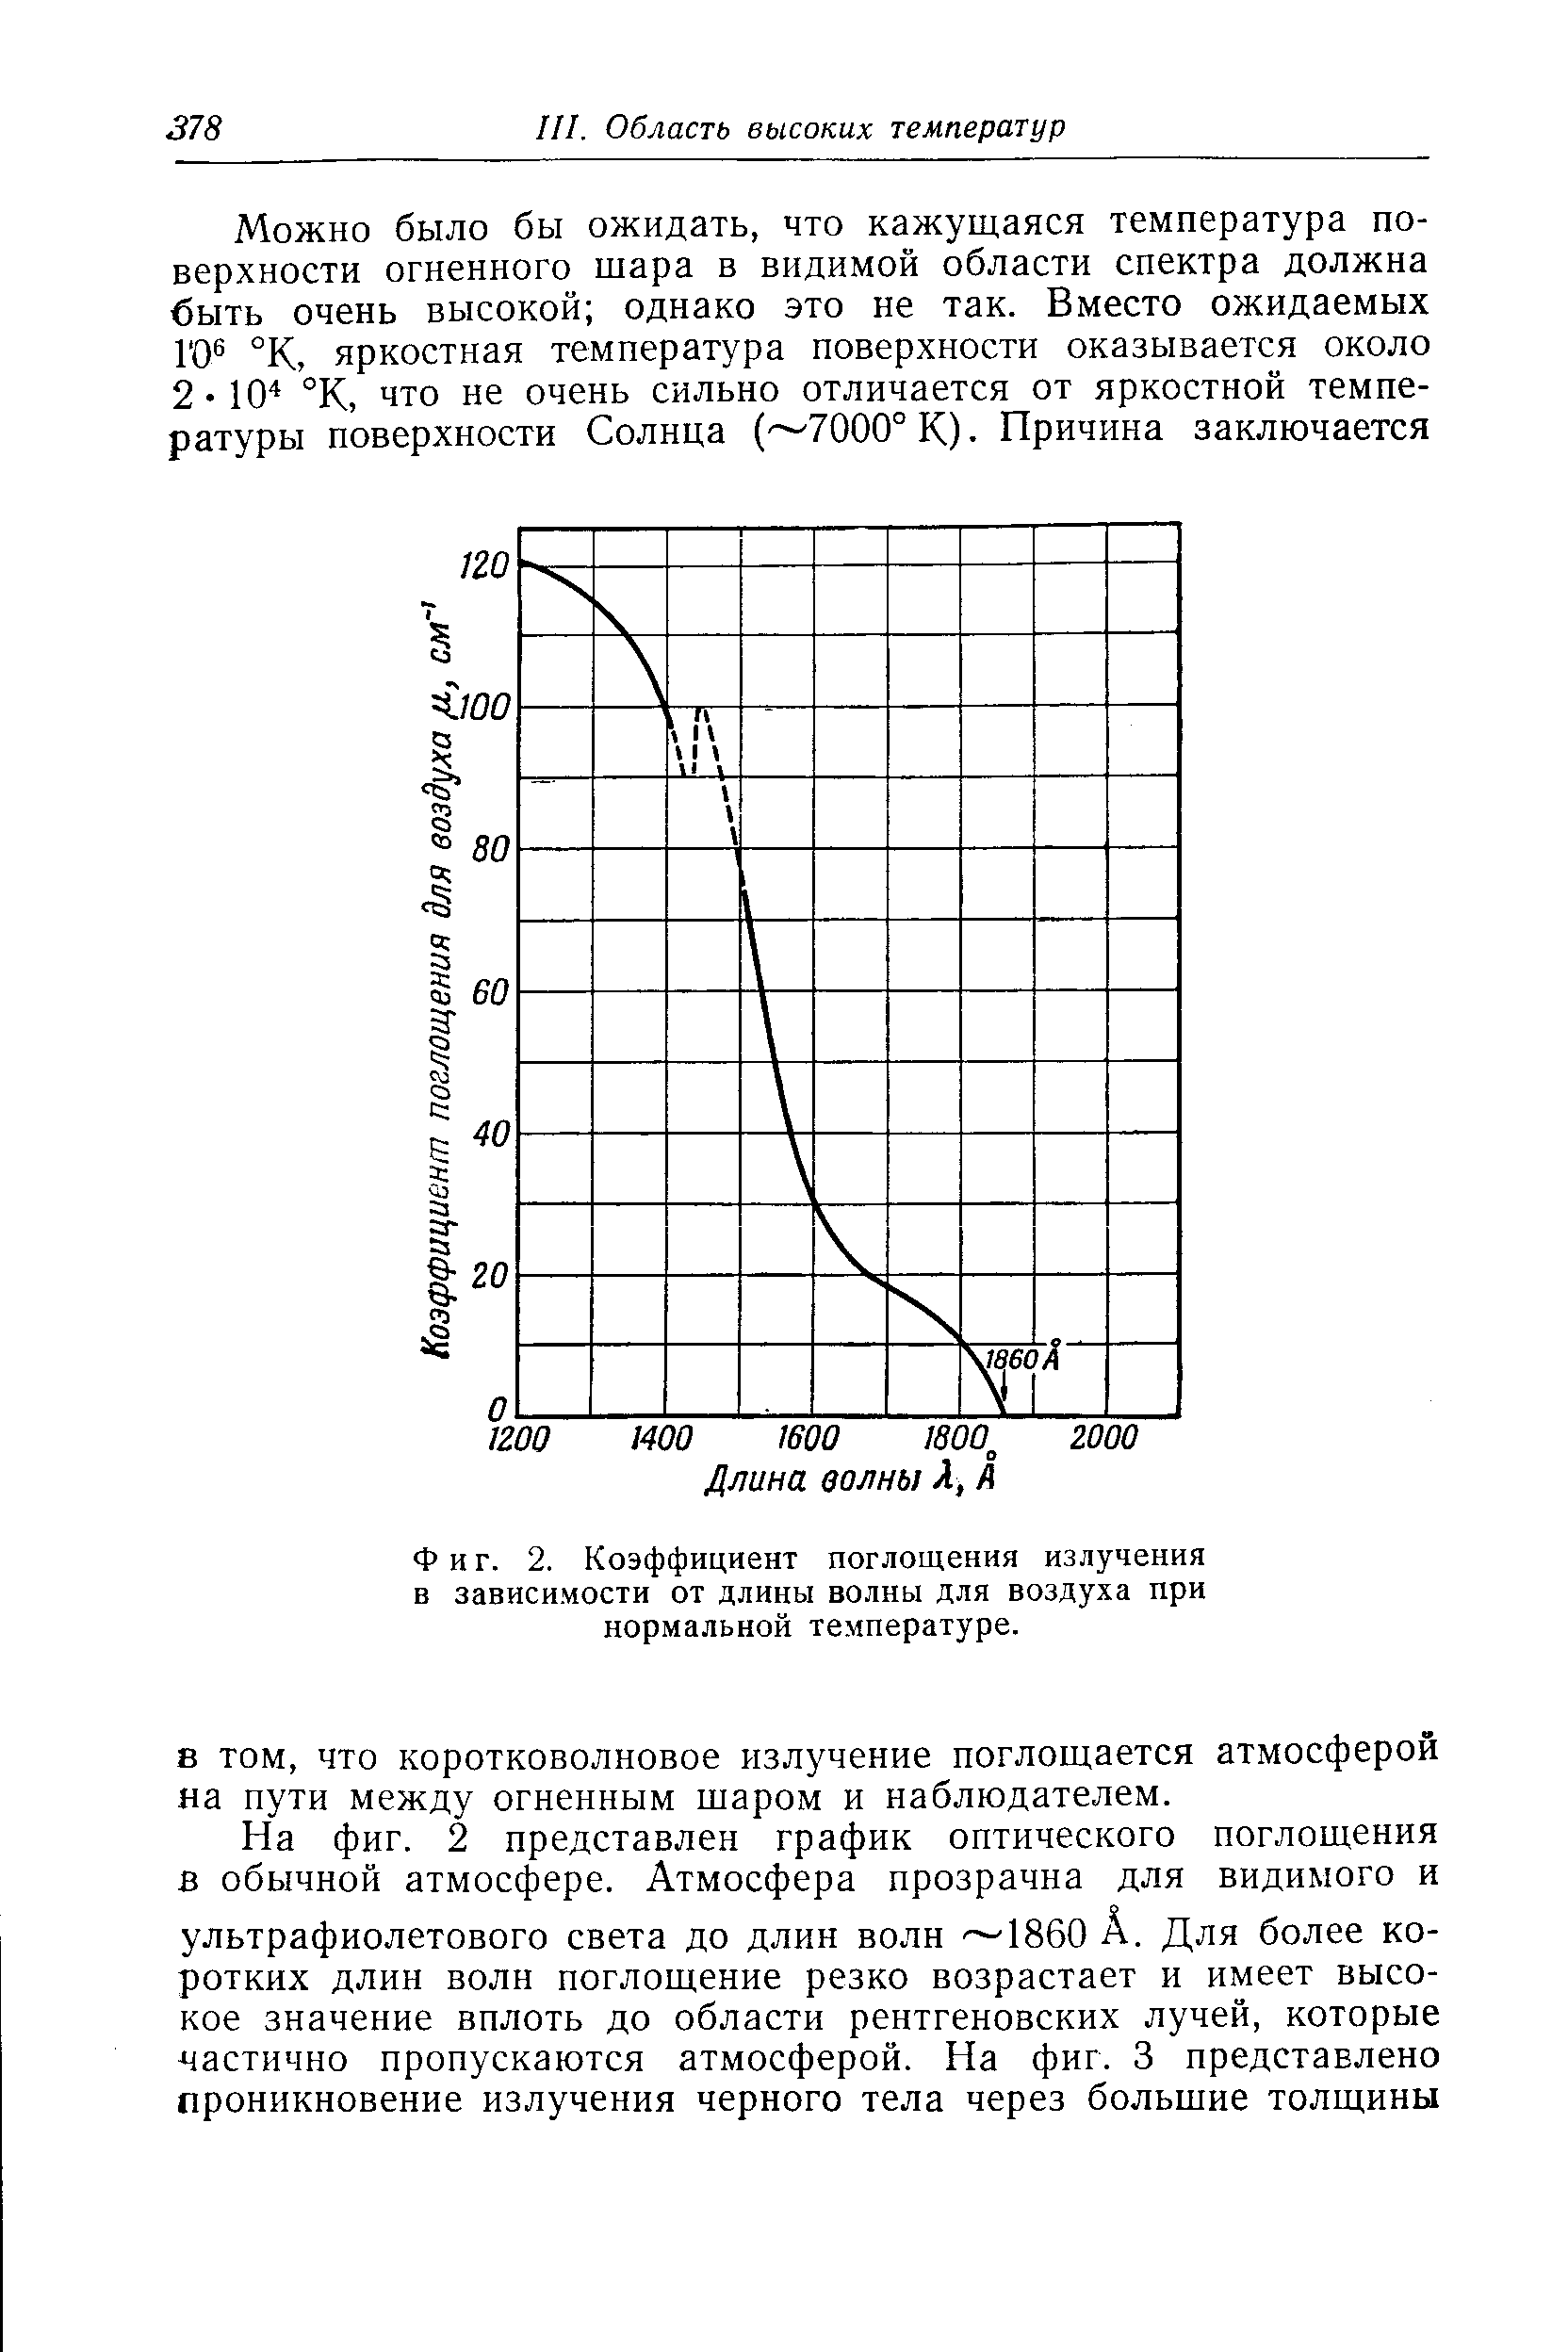 Фиг. 2. Коэффициент поглощения излучения в зависимости от <a href="/info/12500">длины волны</a> для воздуха при нормальной температуре.
